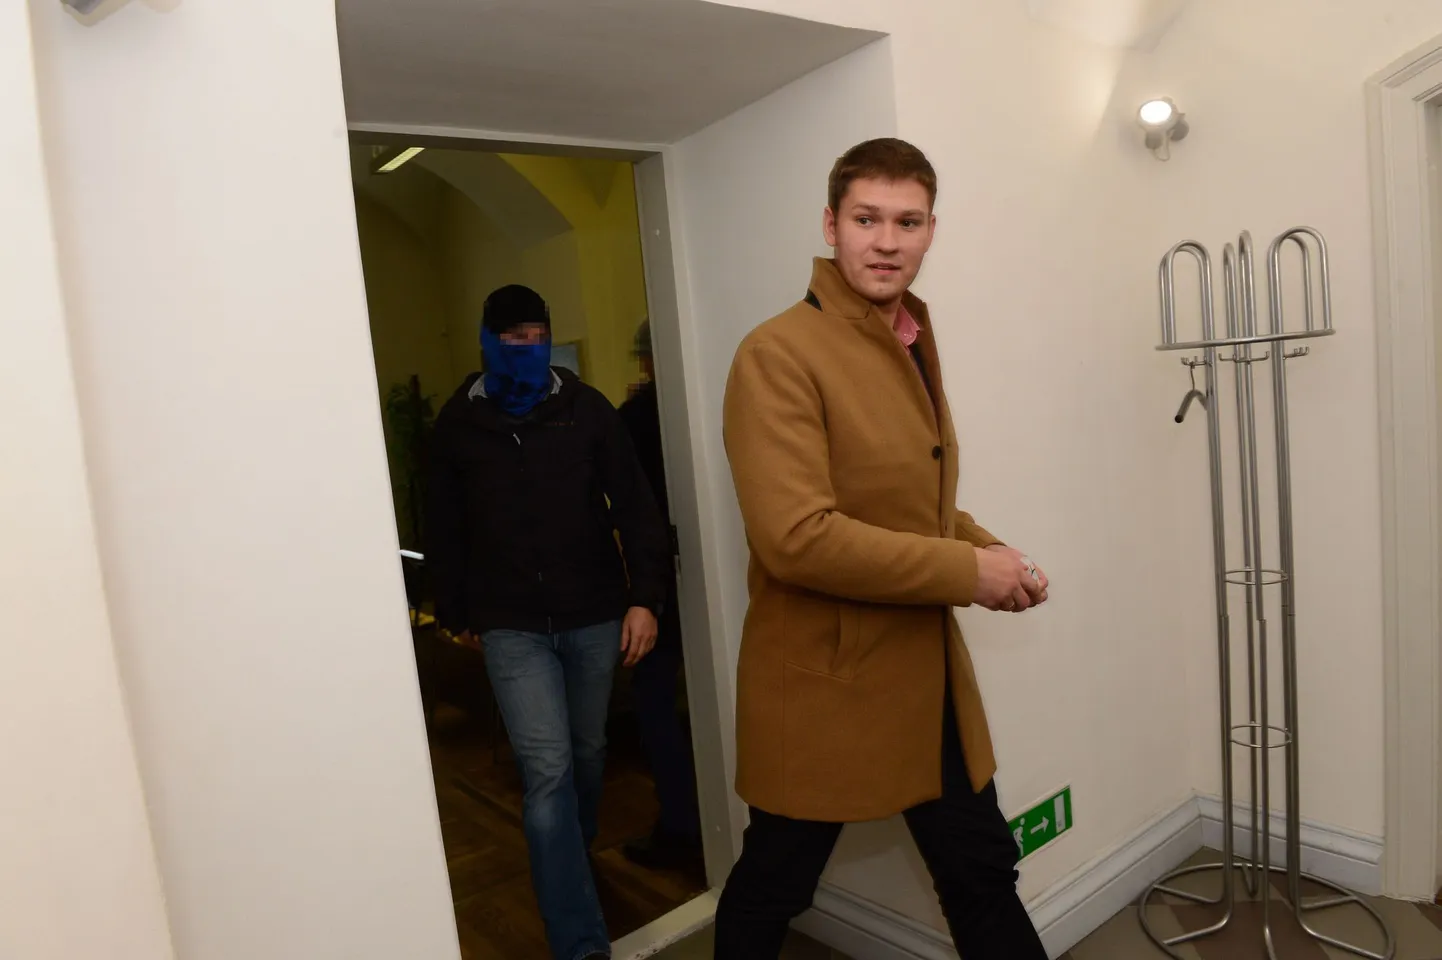 Tartu abilinnapea Artjom Suvorov lahkus eile raekojast kaitsepolitseinike saatel. Kahtlustuse kohaselt võttis ta pikema aja jooksul korduvalt altkäemaksu mitmele organisatsioonile toetussummade eraldamise eest.